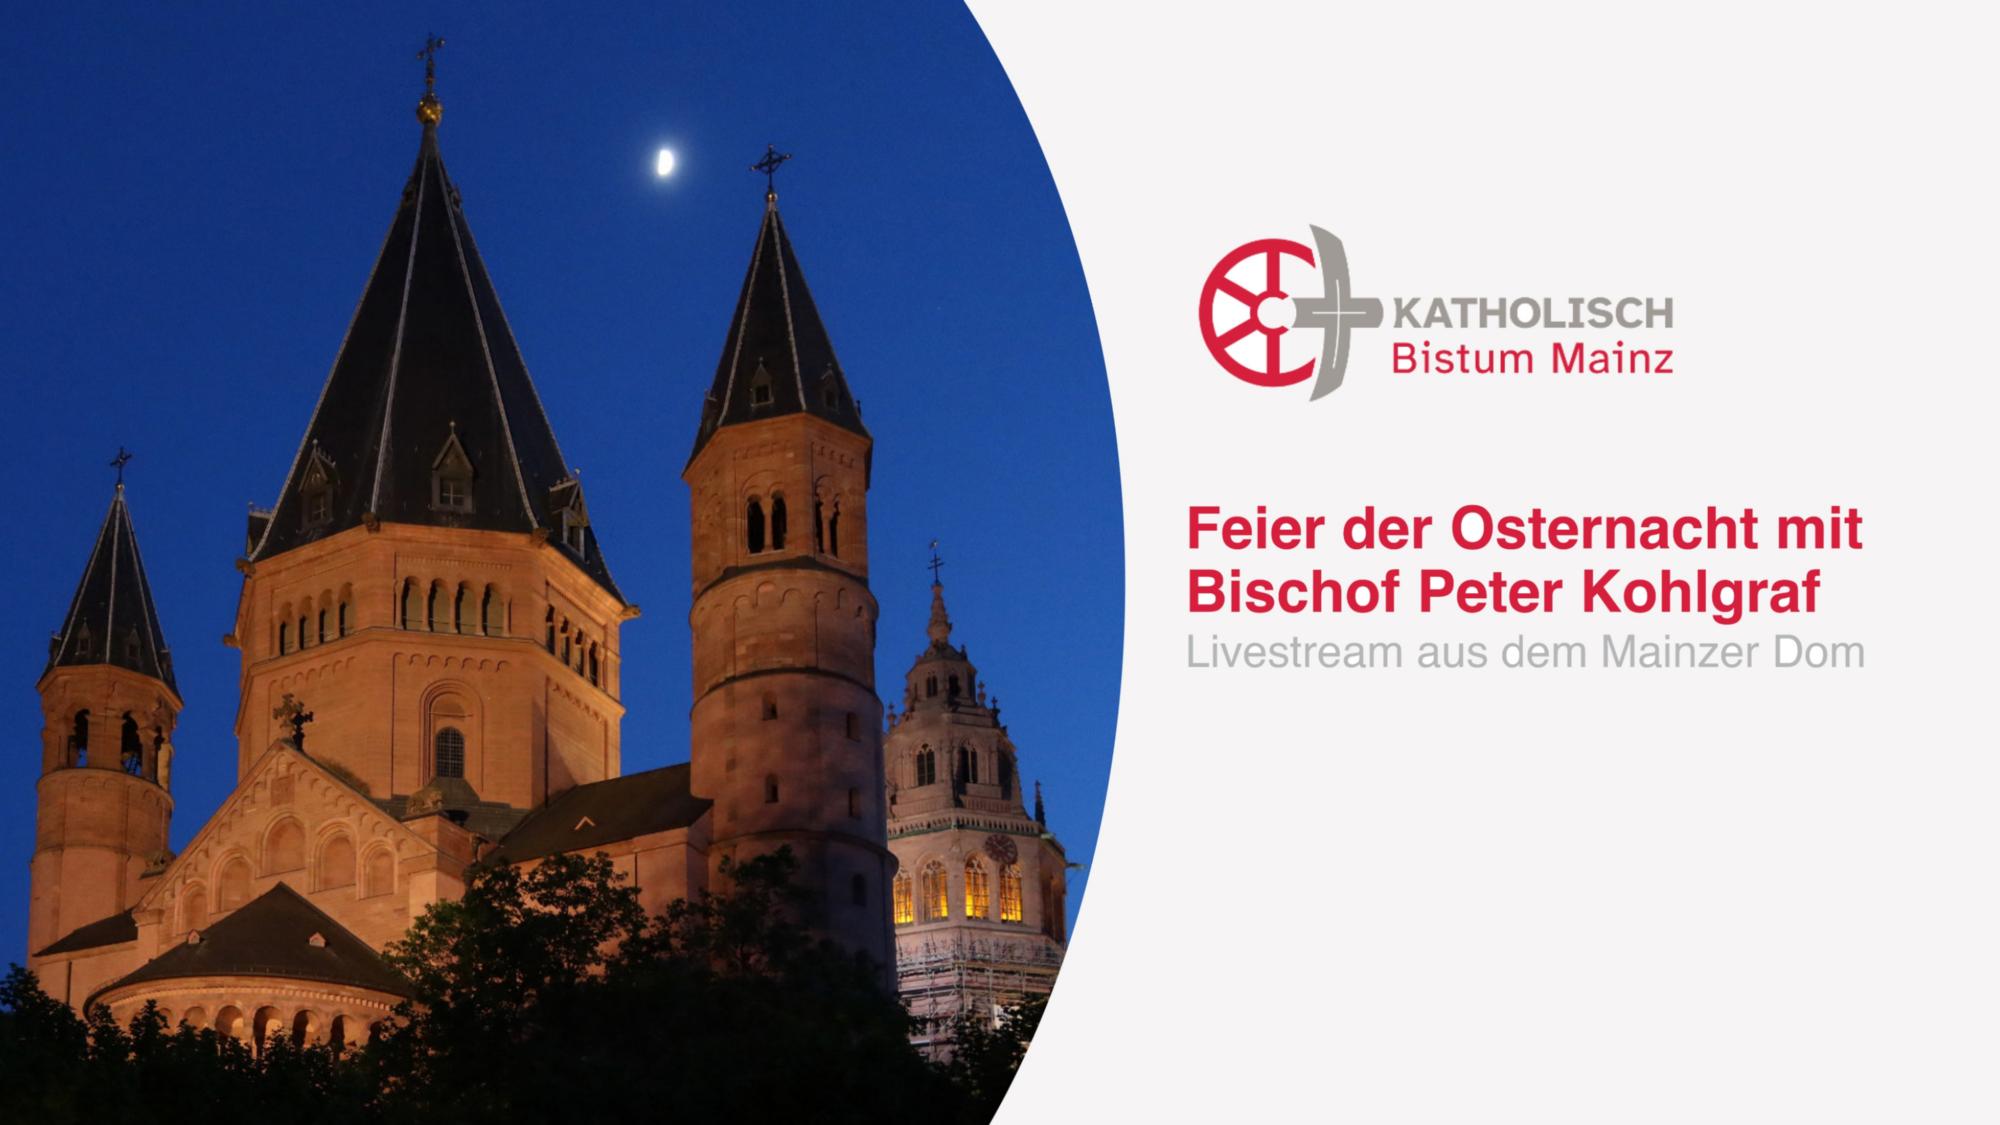 Feier der Osternacht im Mainzer Dom